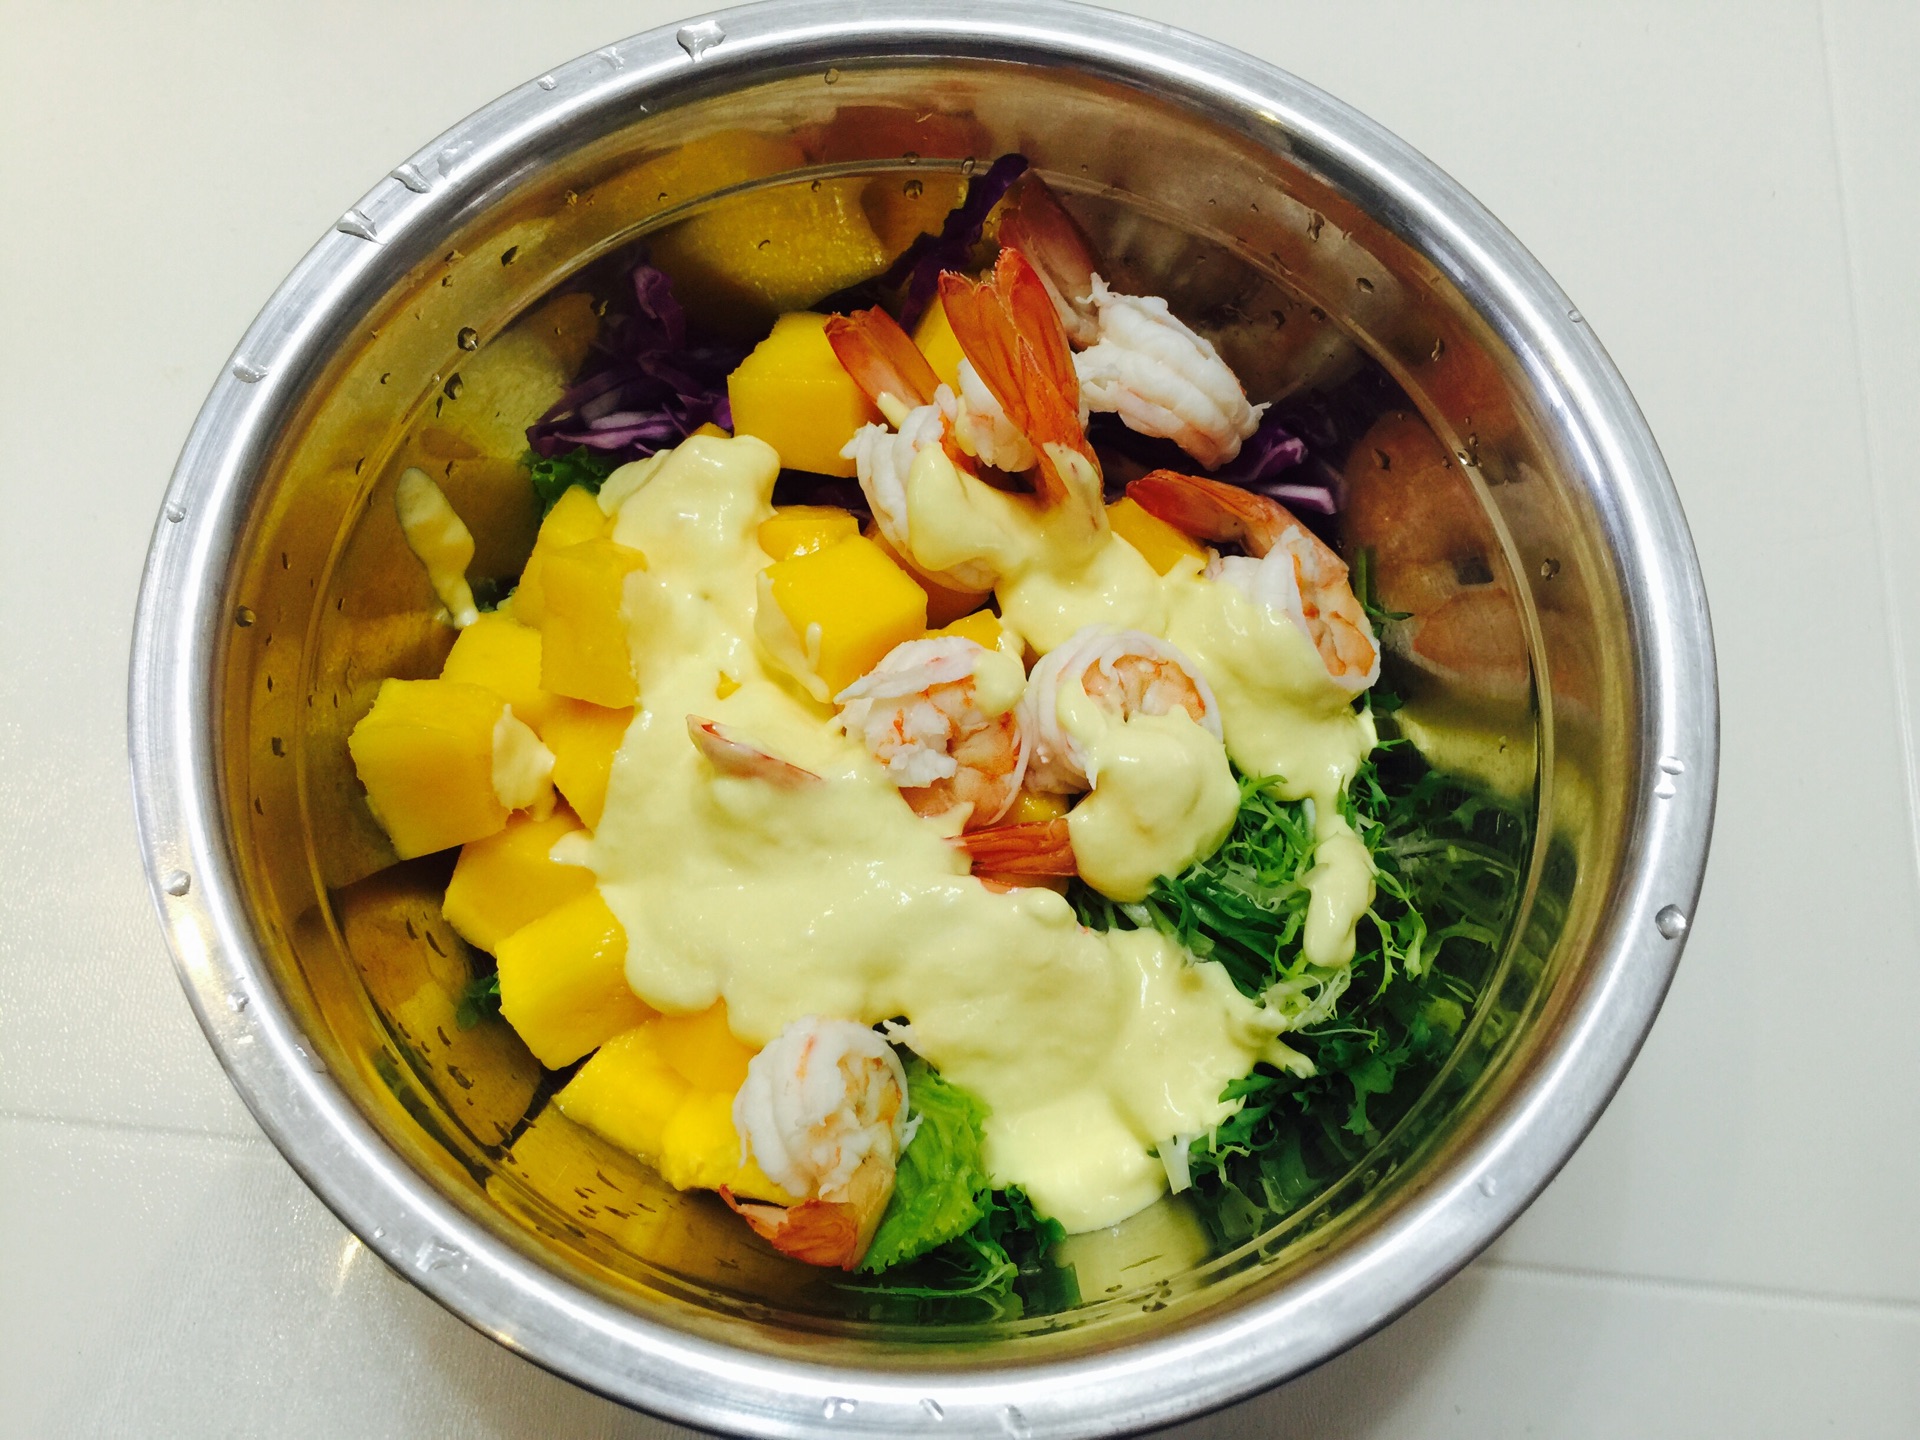 我的烹饪食谱 の Spice Up My Kitchen: 马来式芒果沙拉 Malay Style Mango Salad (Kerabu Mangga)